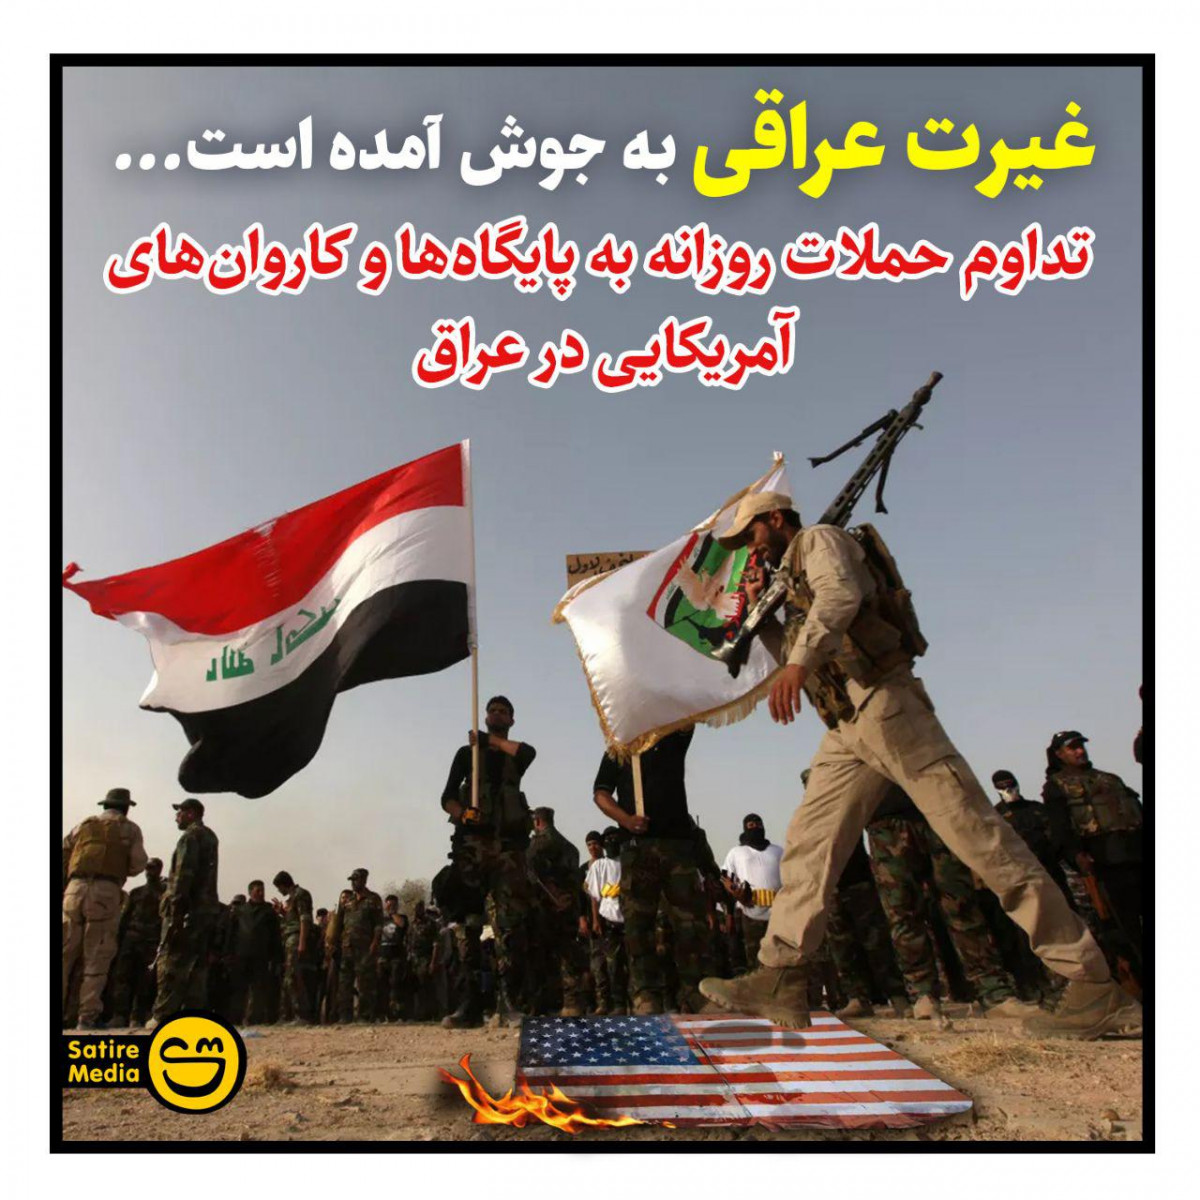 پوستر: غیرت عراقی به جوش آمده است